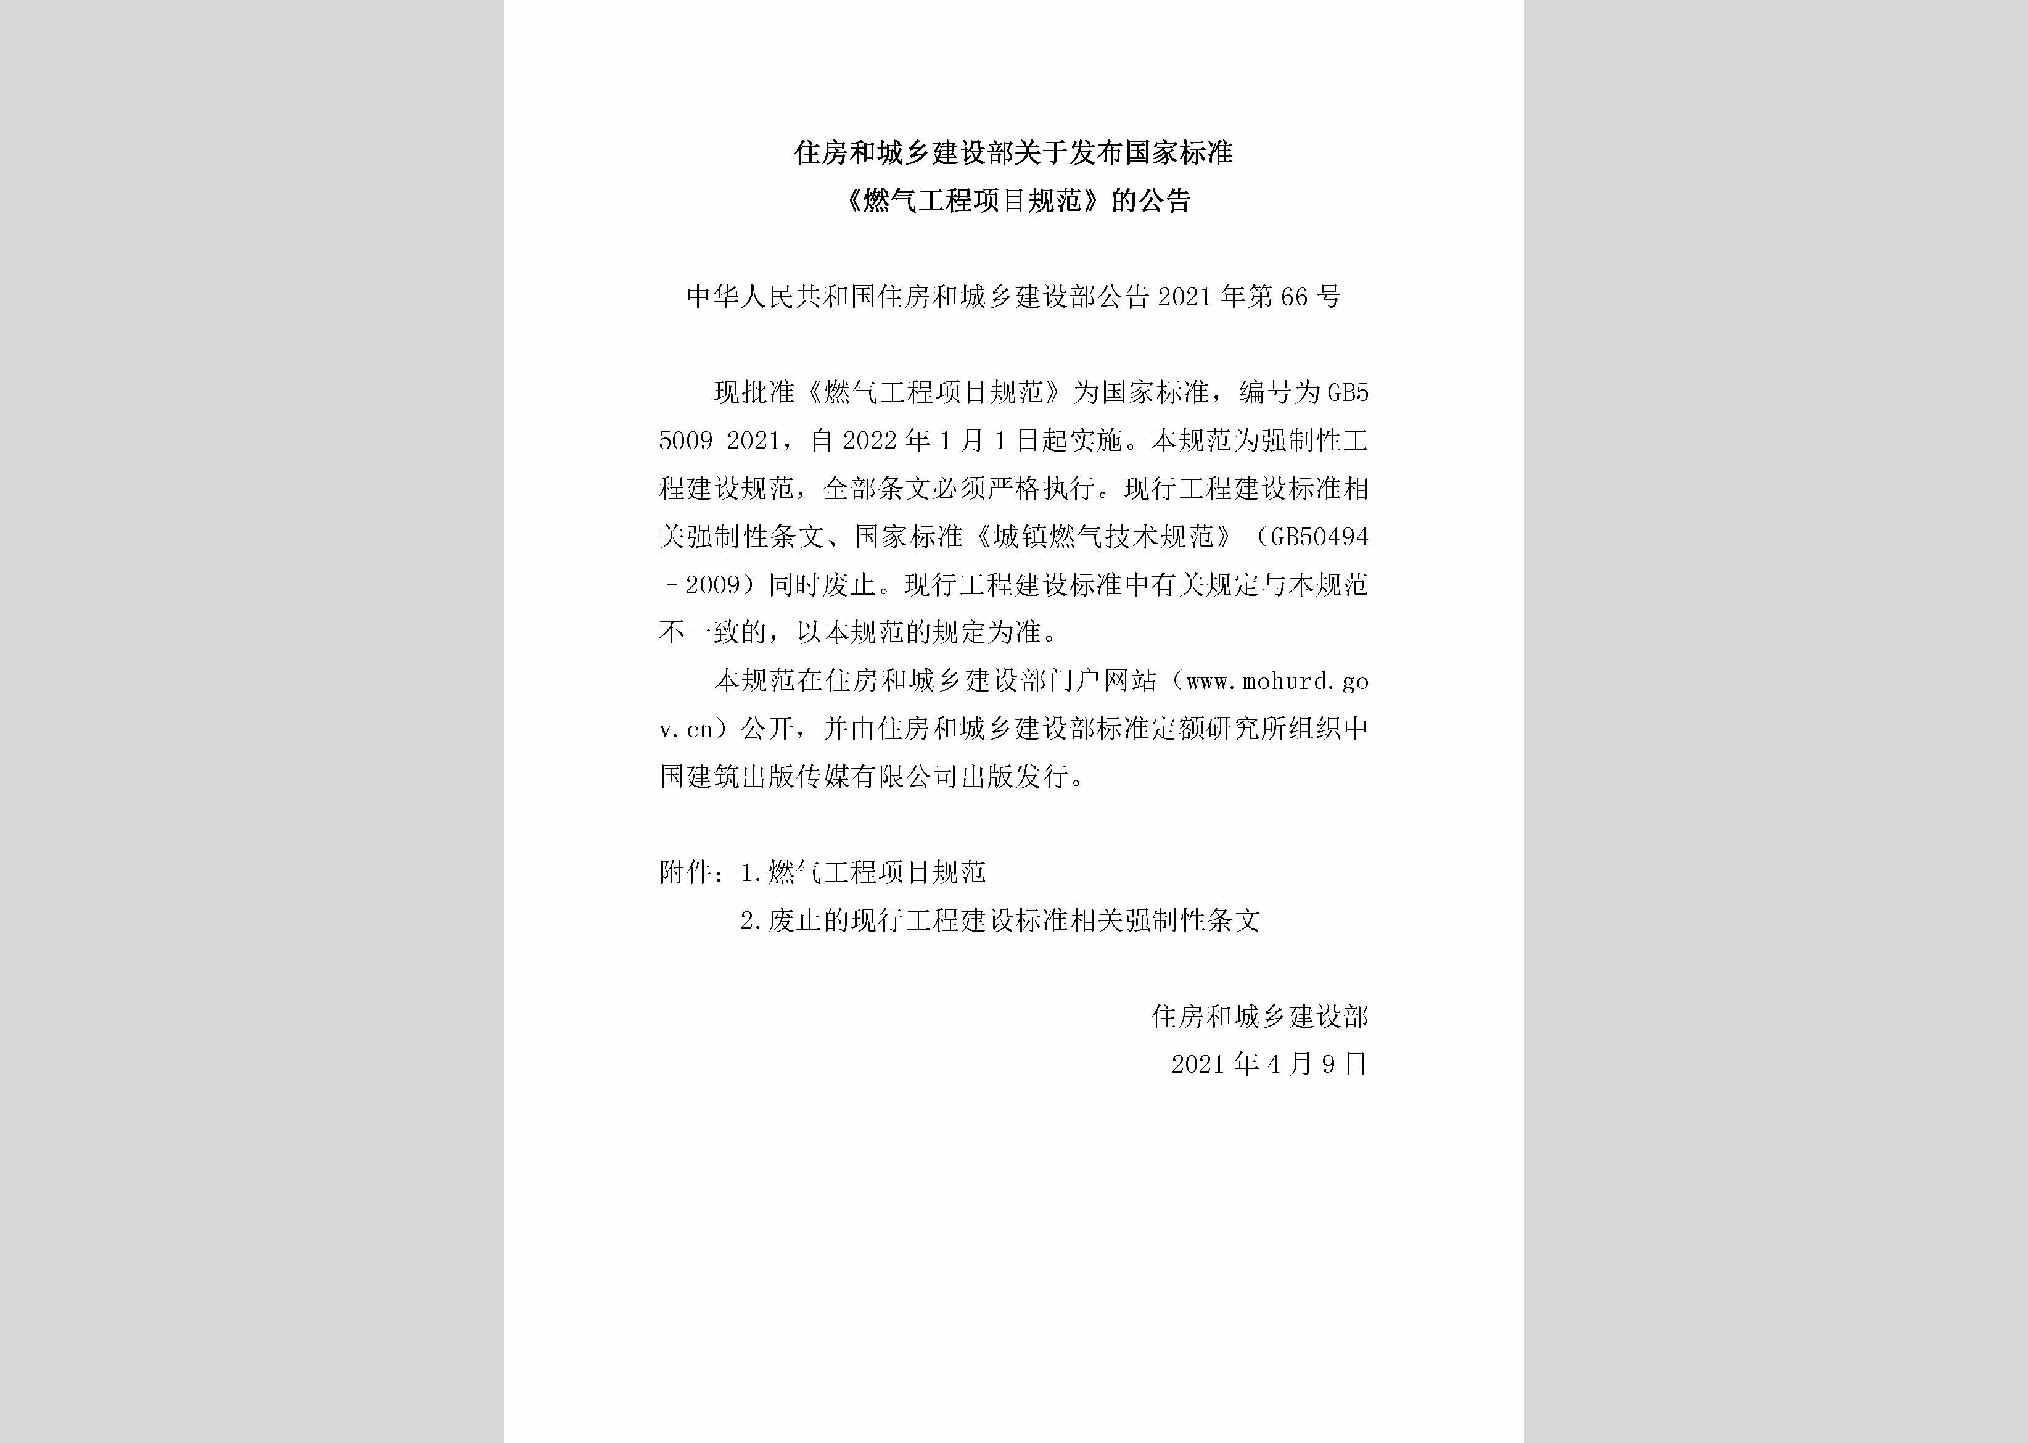 中华人民共和国住房和城乡建设部公告2021年第66号：住房和城乡建设部关于发布国家标准《燃气工程项目规范》的公告